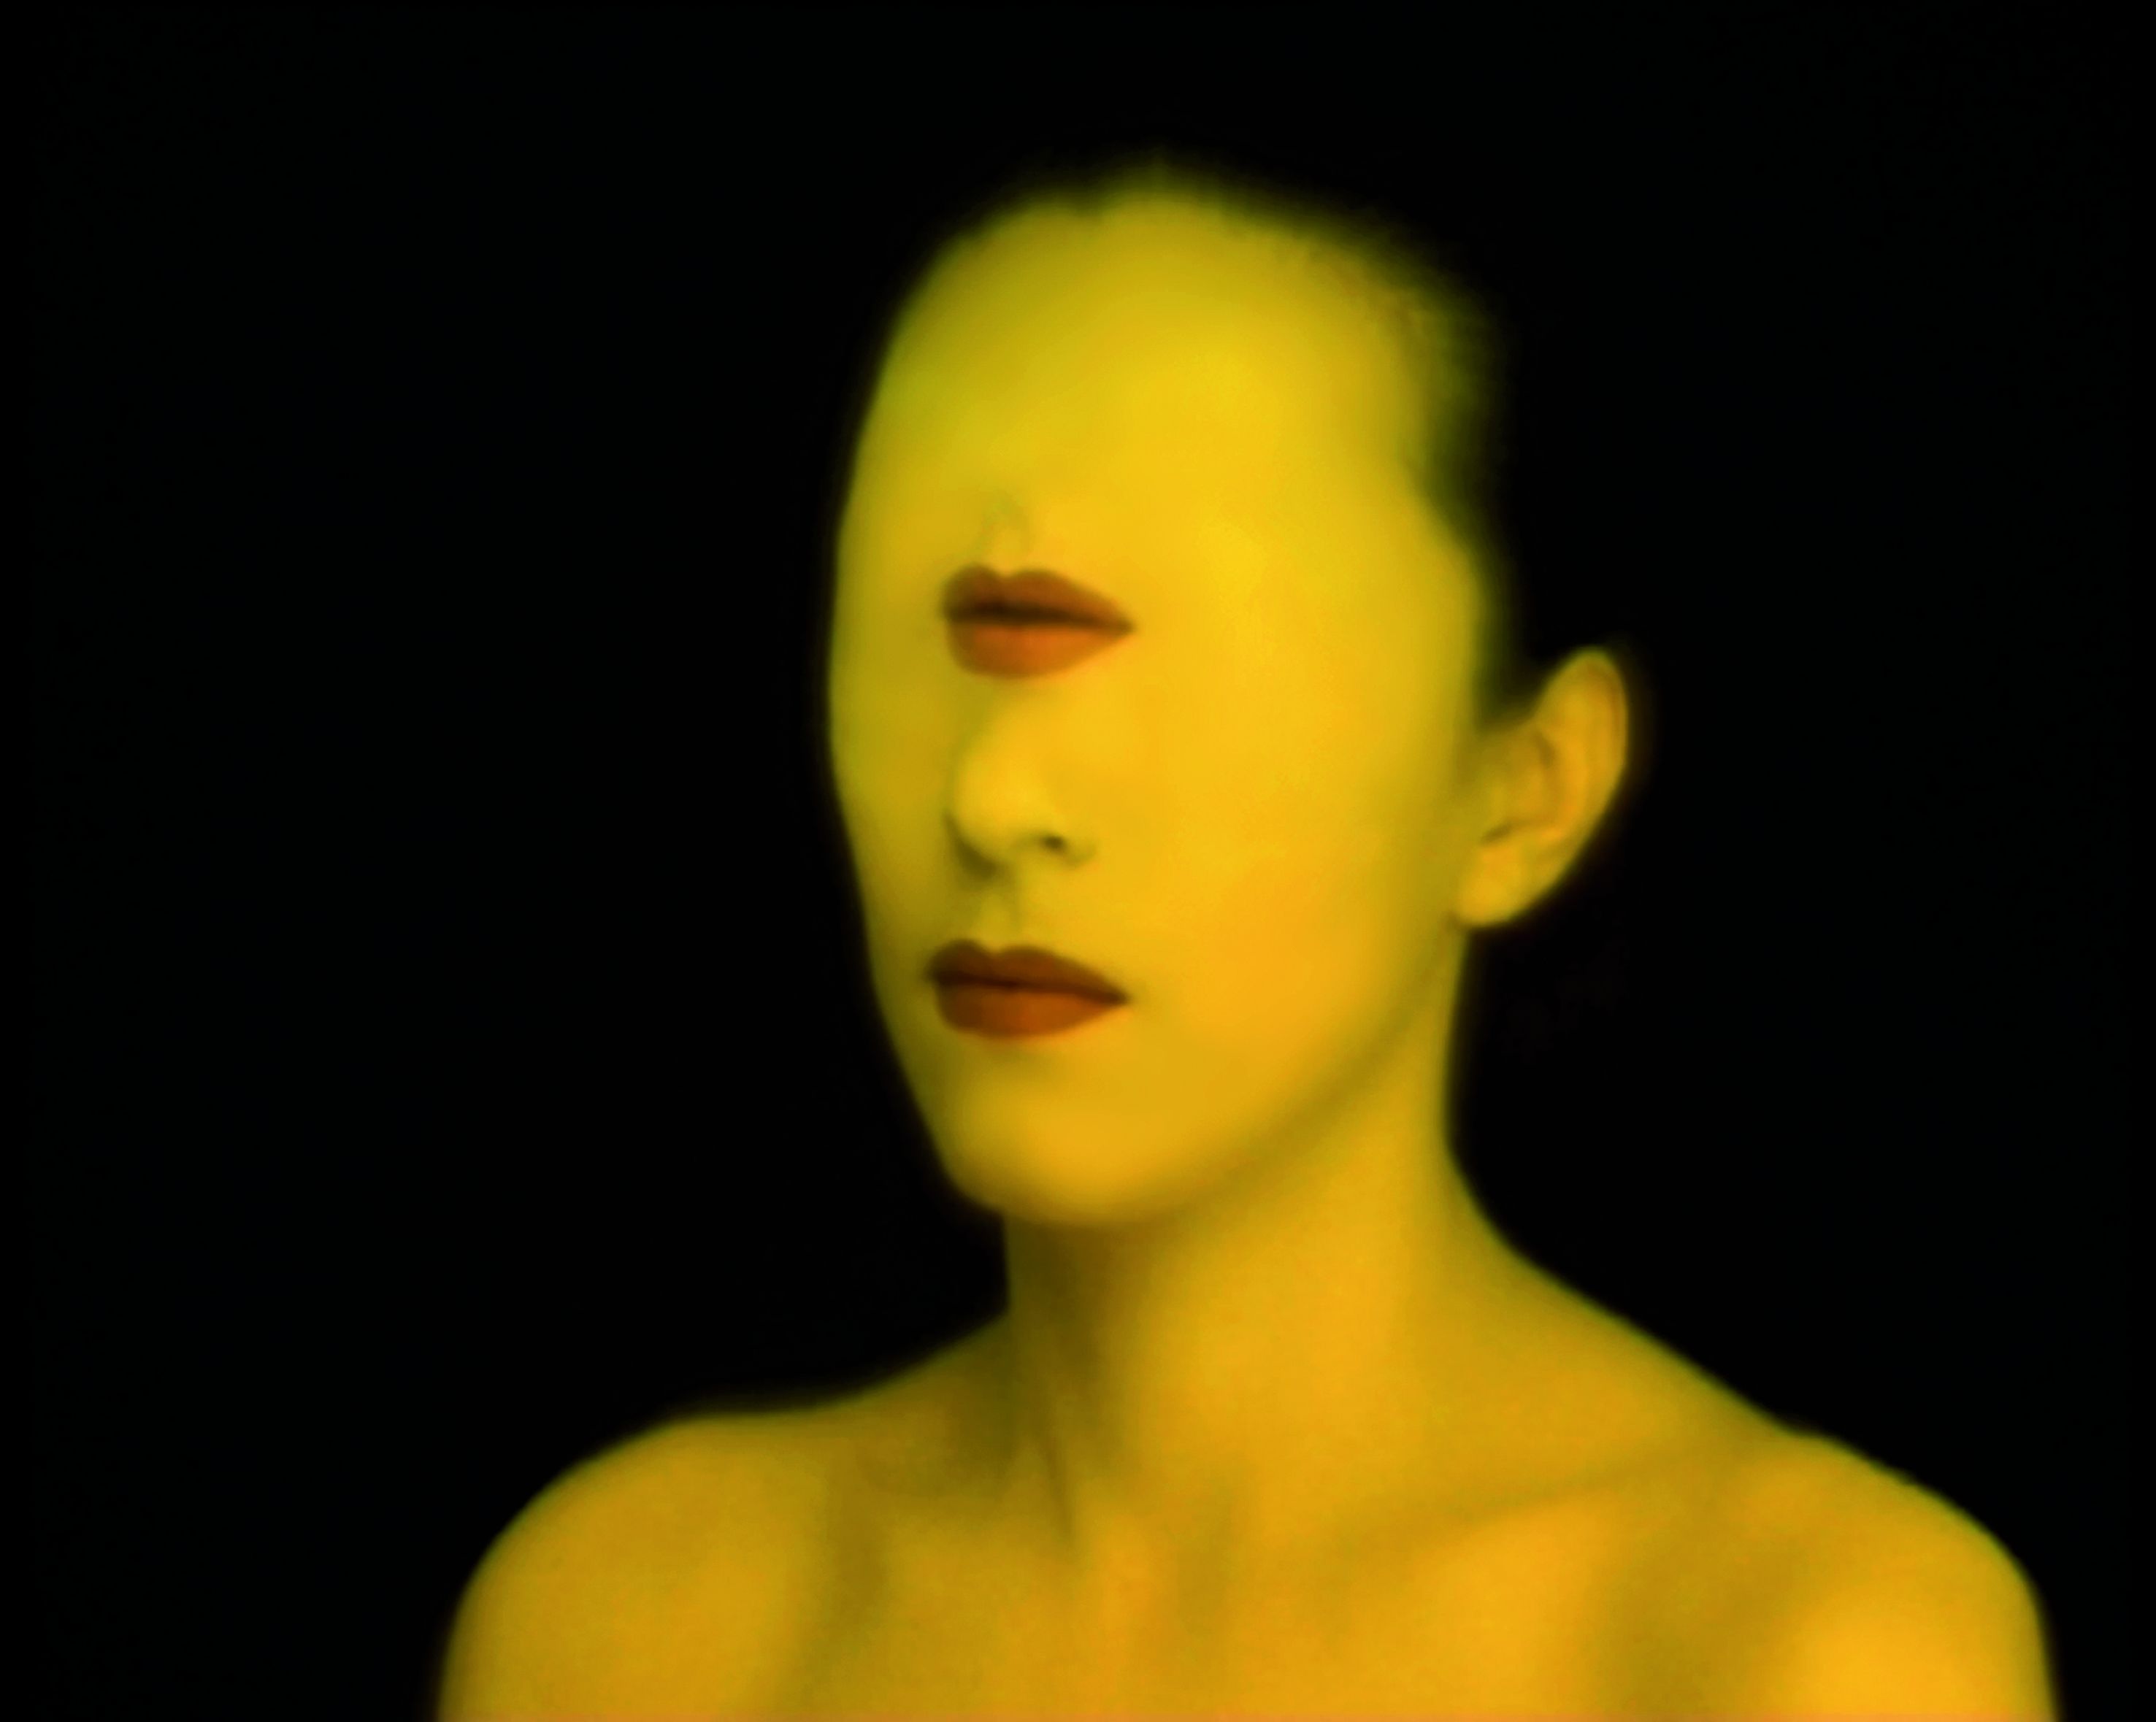 Autoportrait, video still, 1999, single-channel video projection, colour, sound © Danica Dakić, VG Bild-Kunst, Bonn 